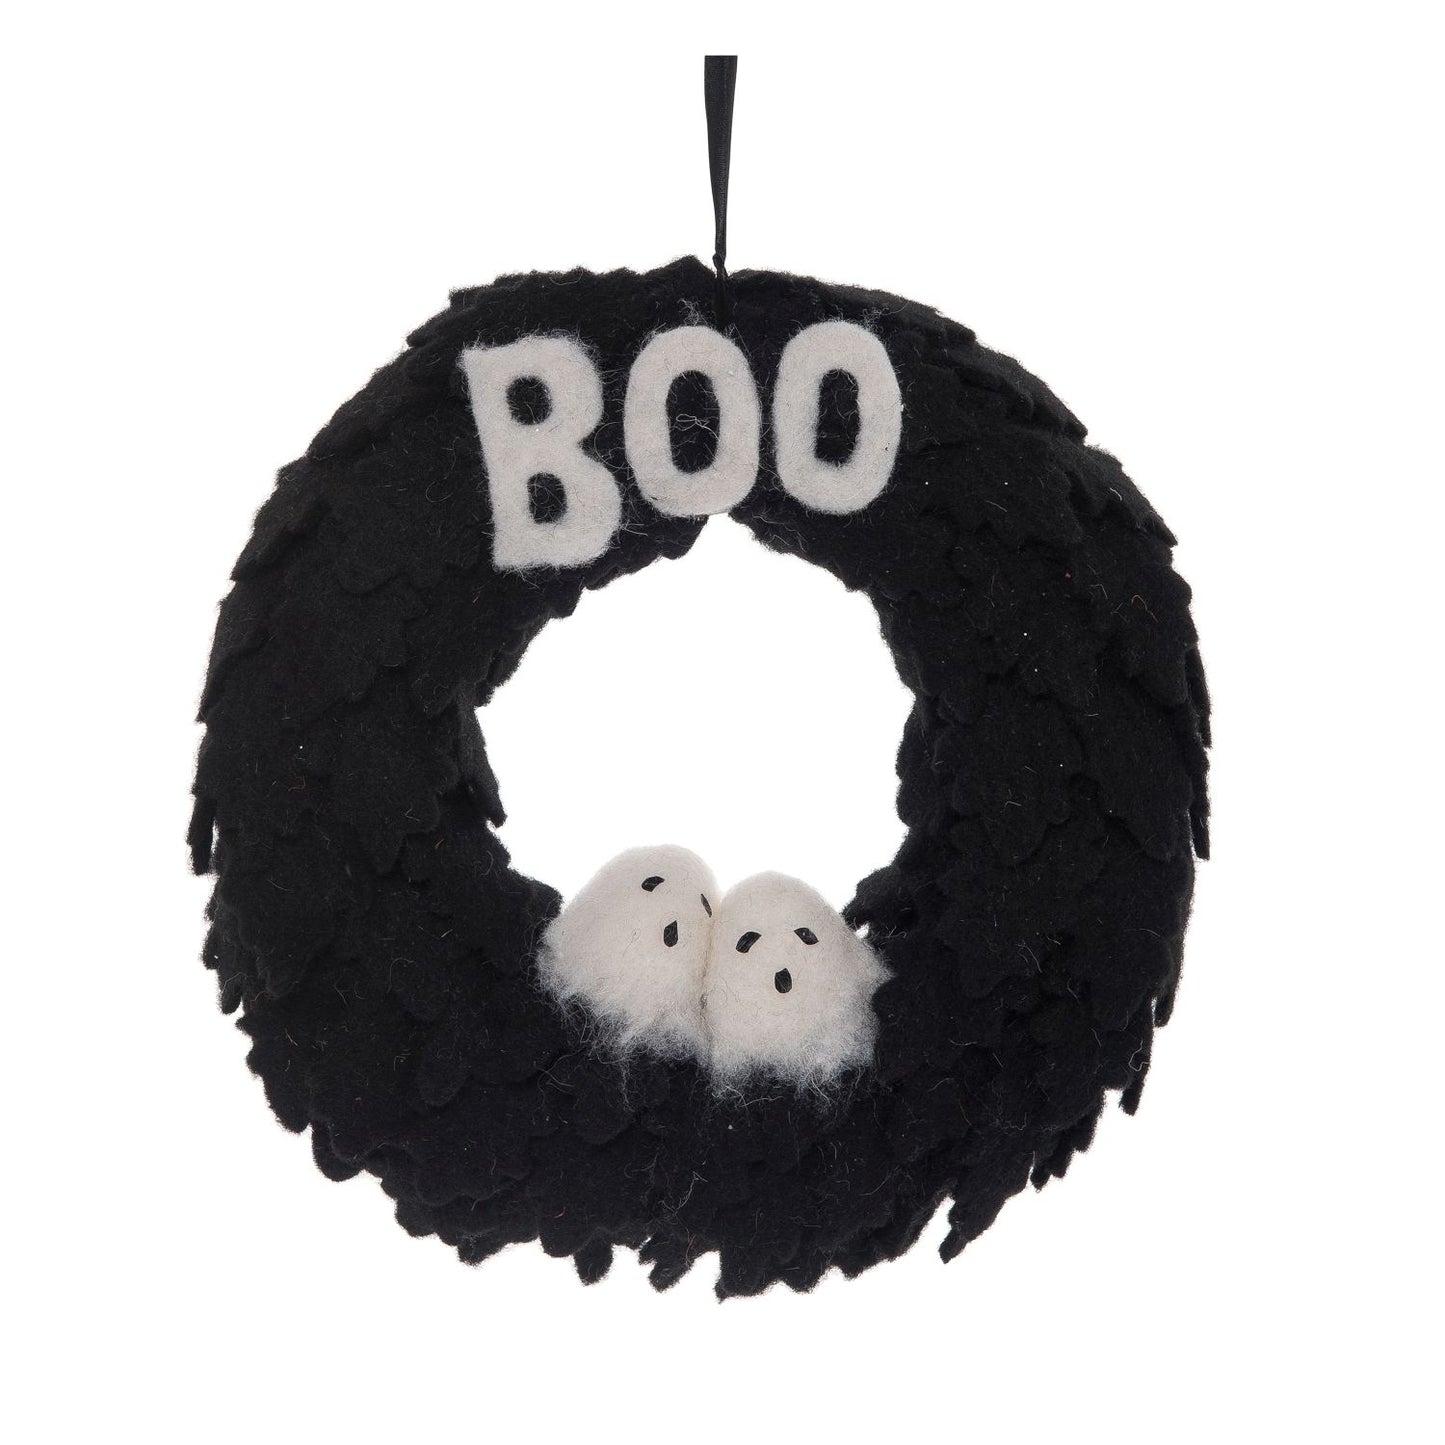 Transpac Ghostly Boo Wreath